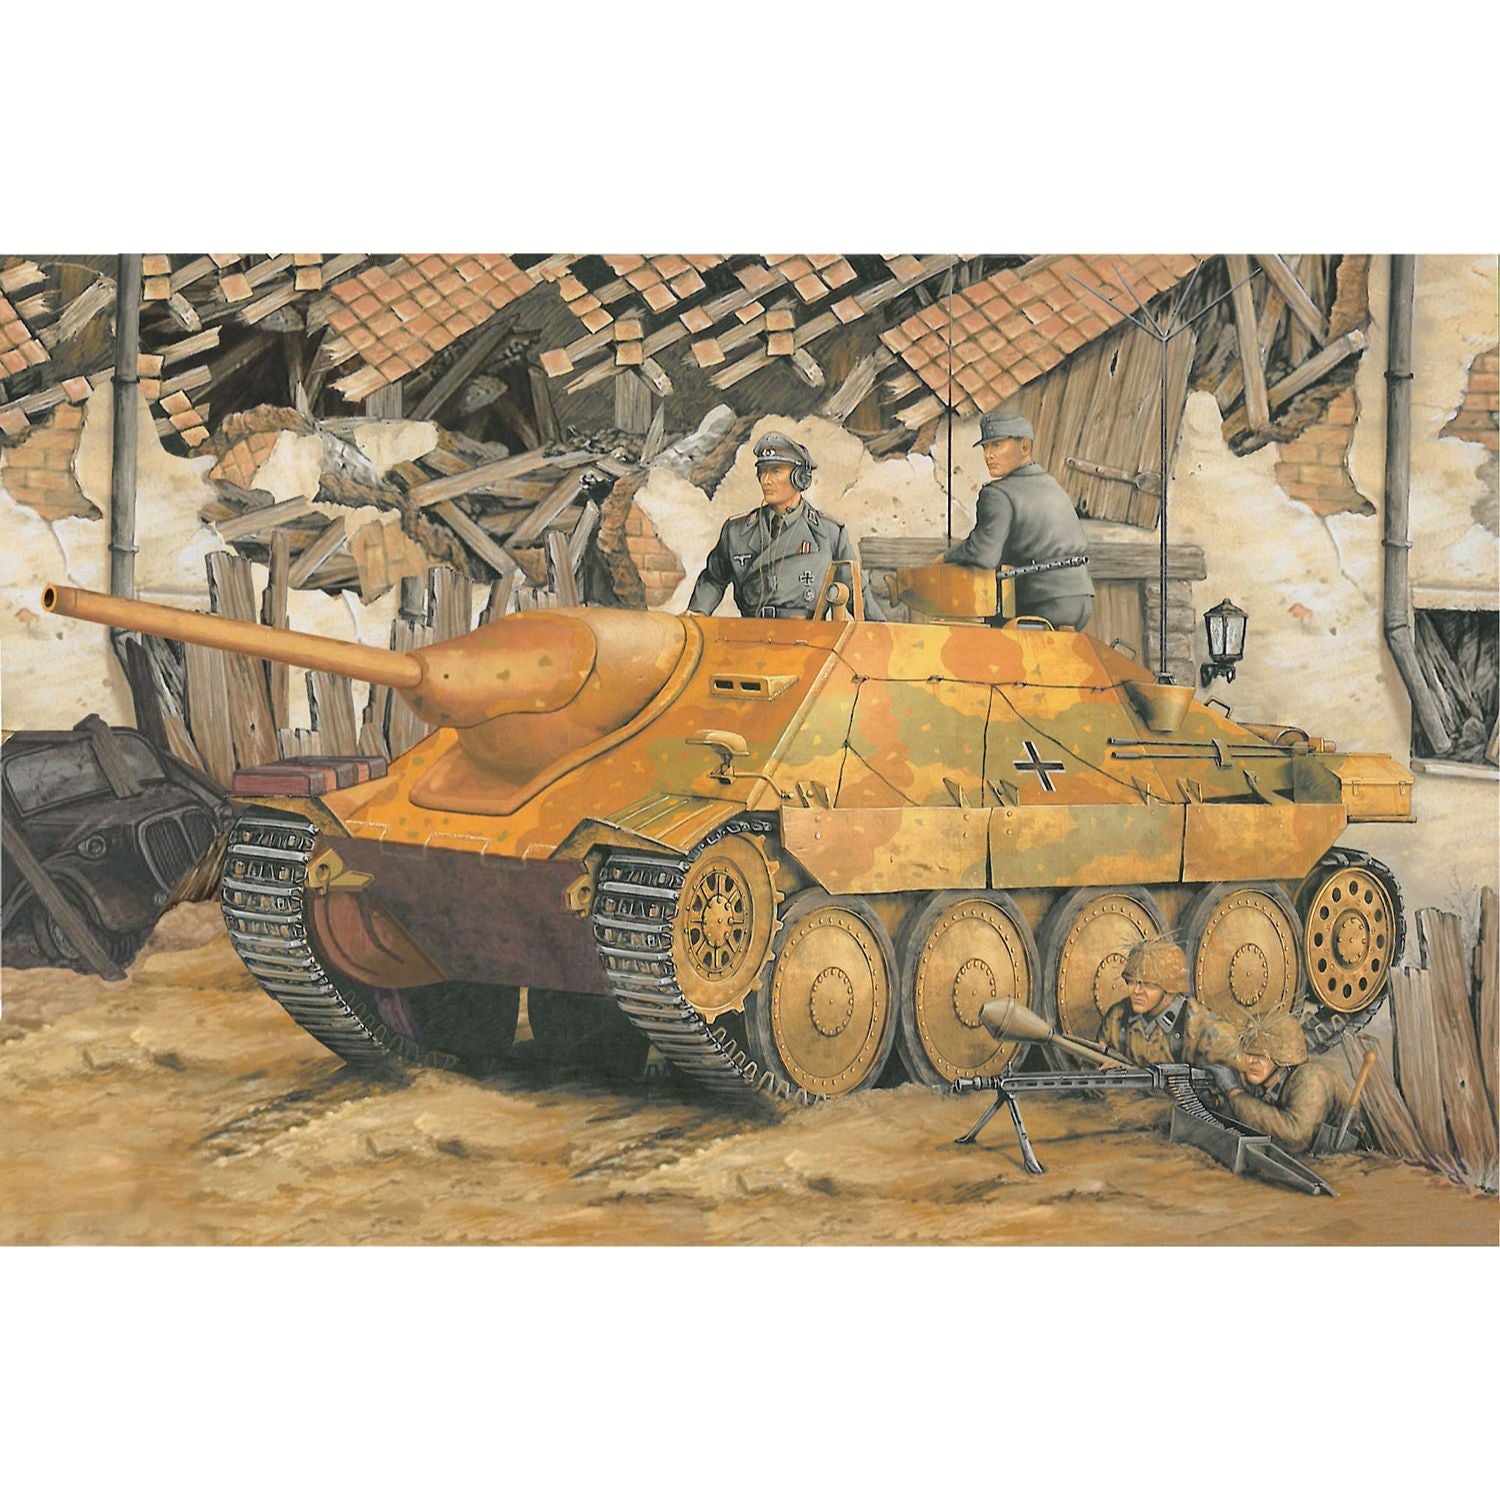 DRAGON(ドラゴン) WW.II ドイツ軍 駆逐戦車ヘッツァー 指揮戦車 1/35スケール 未塗装組立キット